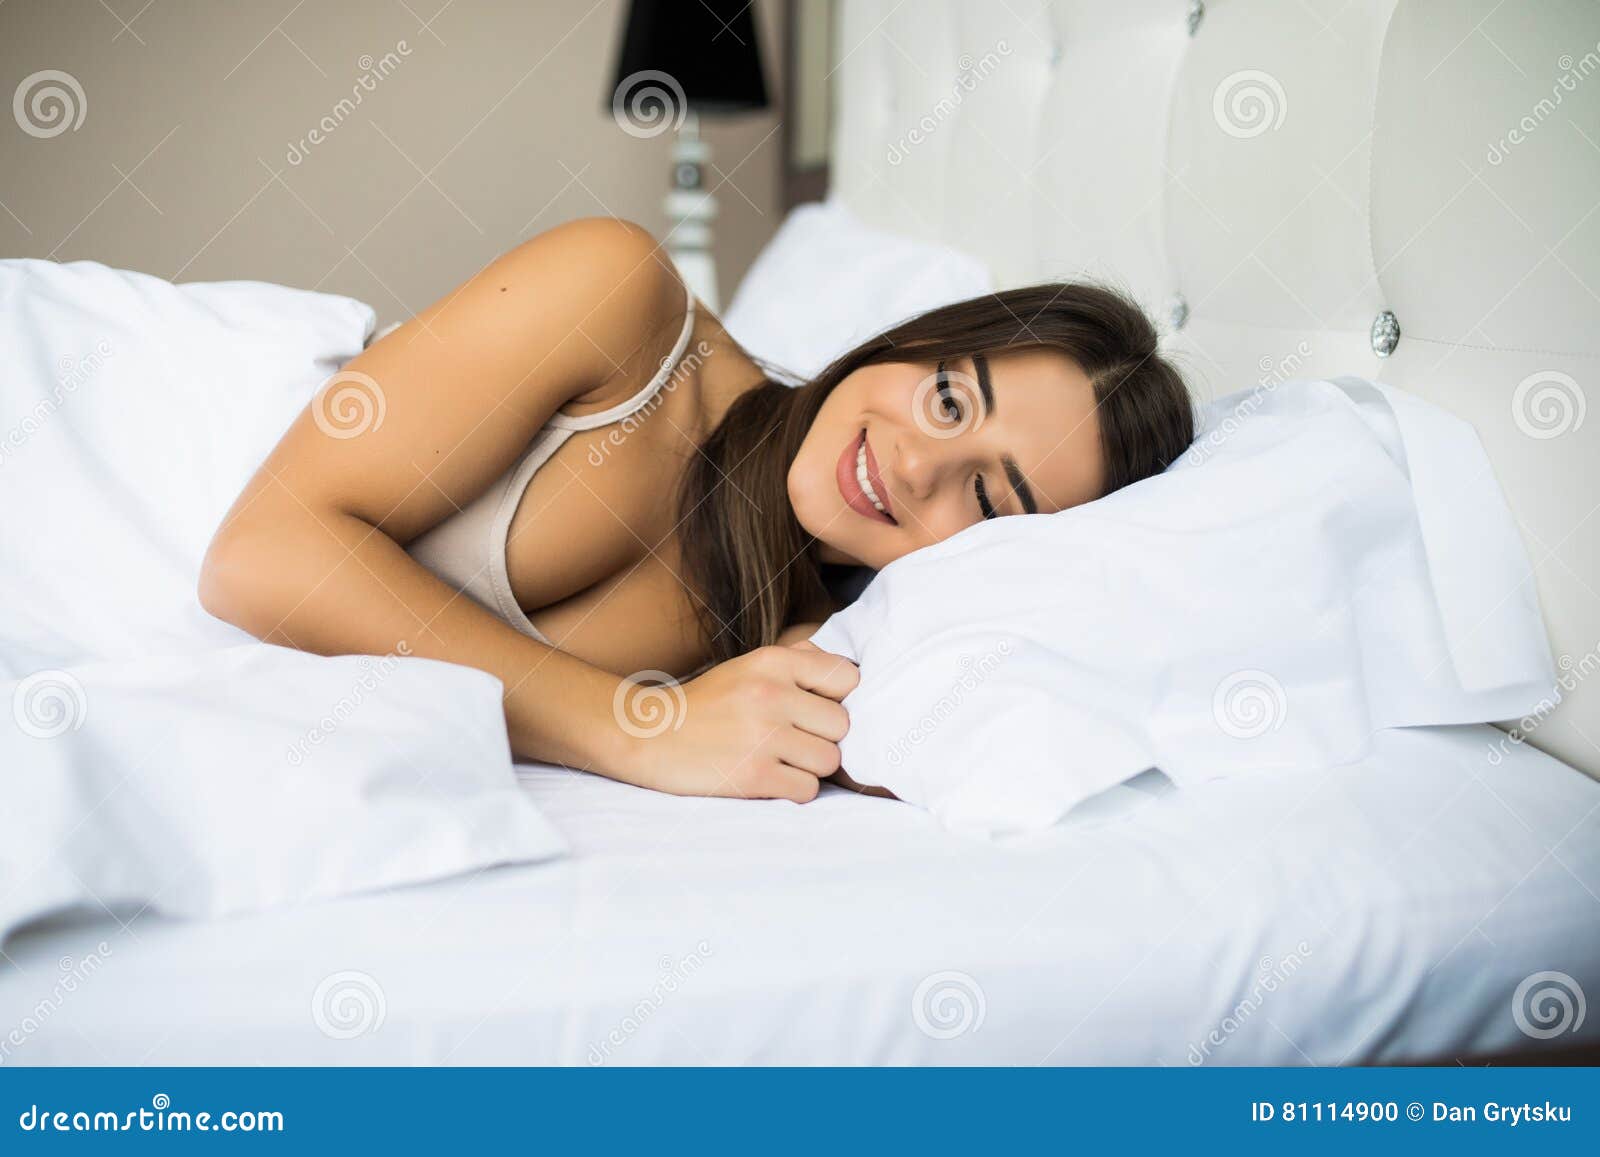 Удовольствие женщины в постели. Ухоженные женщины в постели. Холеная женщина в постели. Красивые ухоженные женщины в кровати. Деликатные дамы в постели.